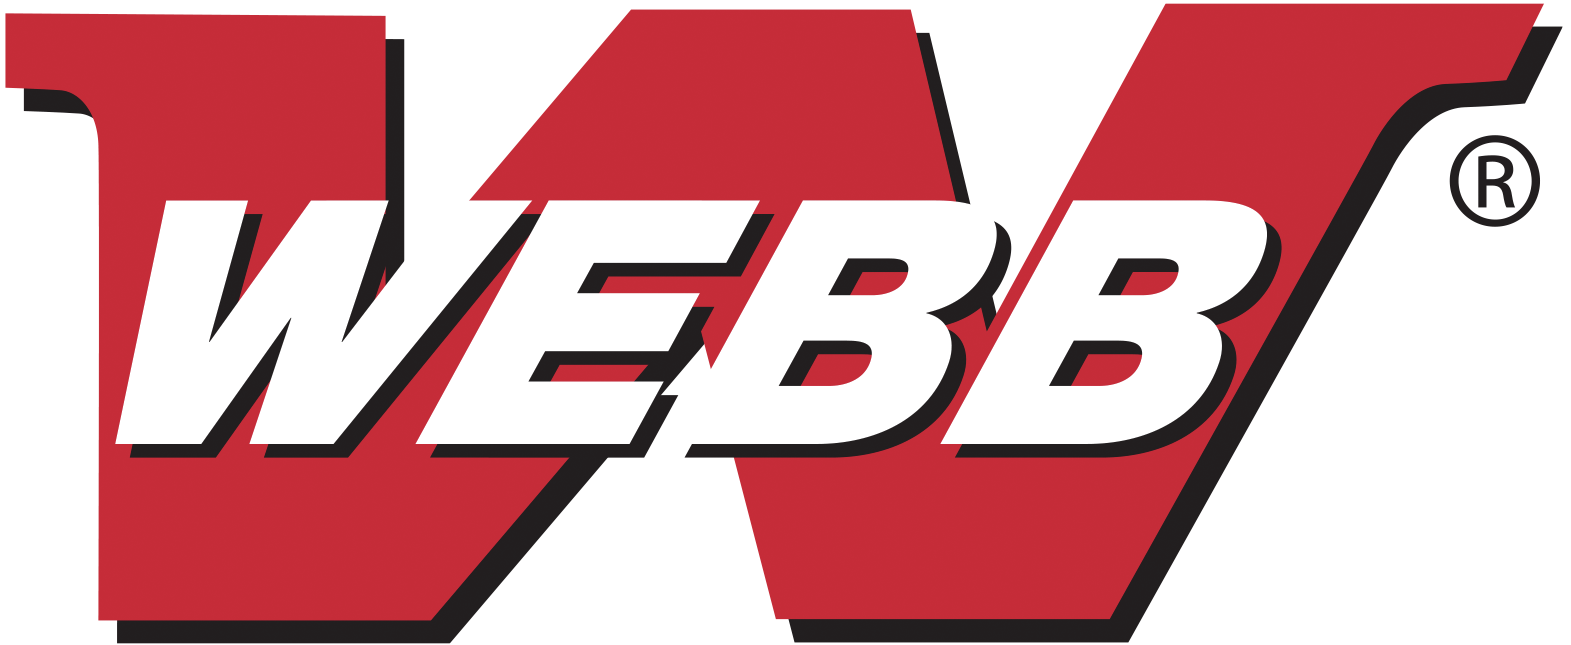 Webb_Logo